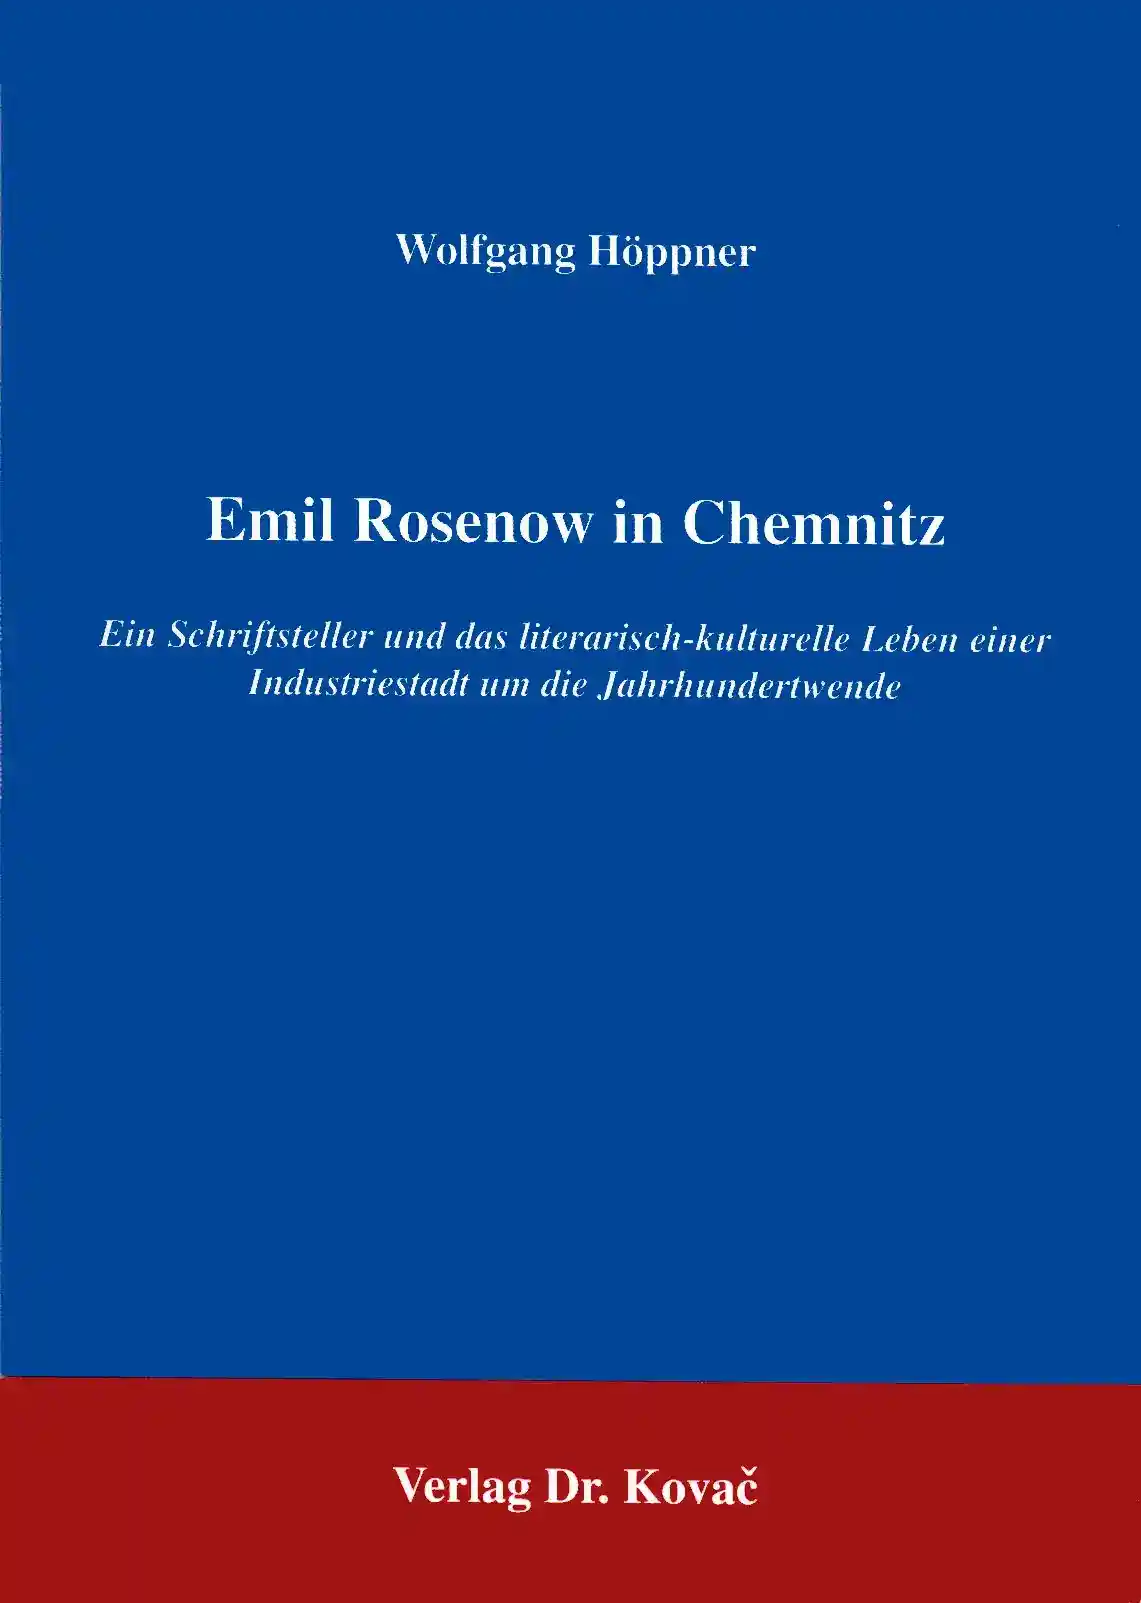 Emil Rosenow in Chemnitz (Forschungsarbeit)